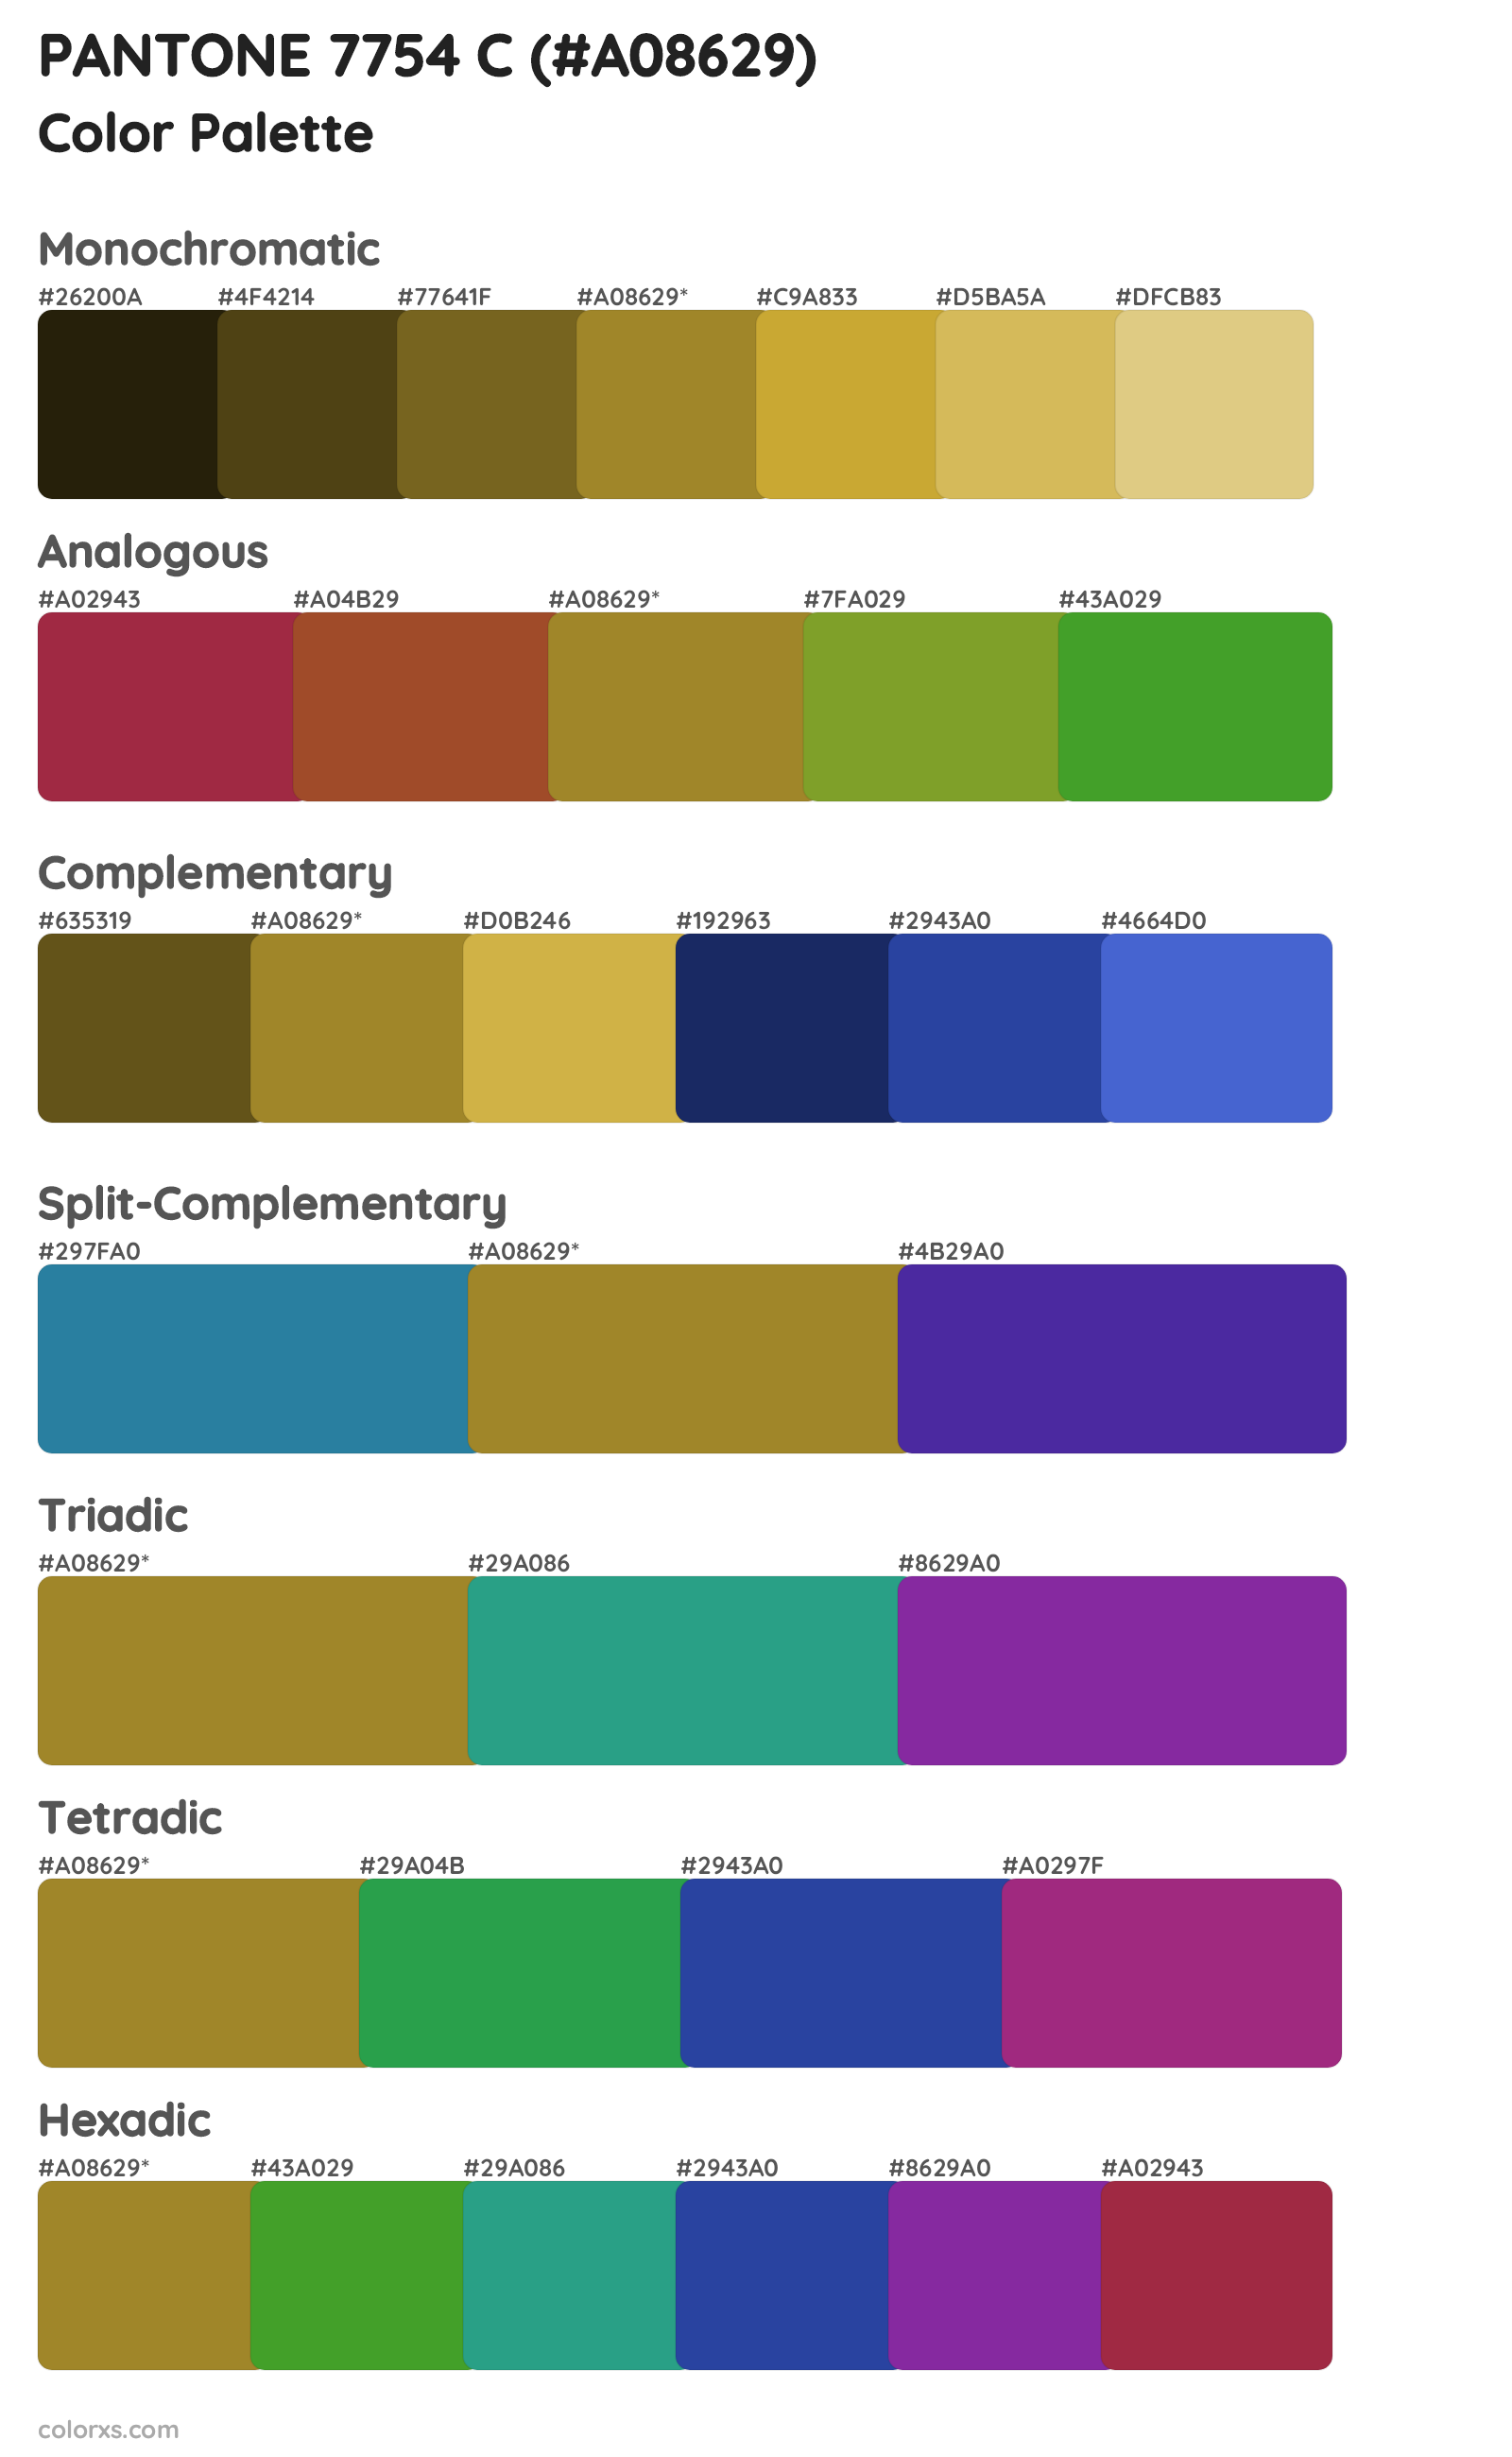 PANTONE 7754 C Color Scheme Palettes